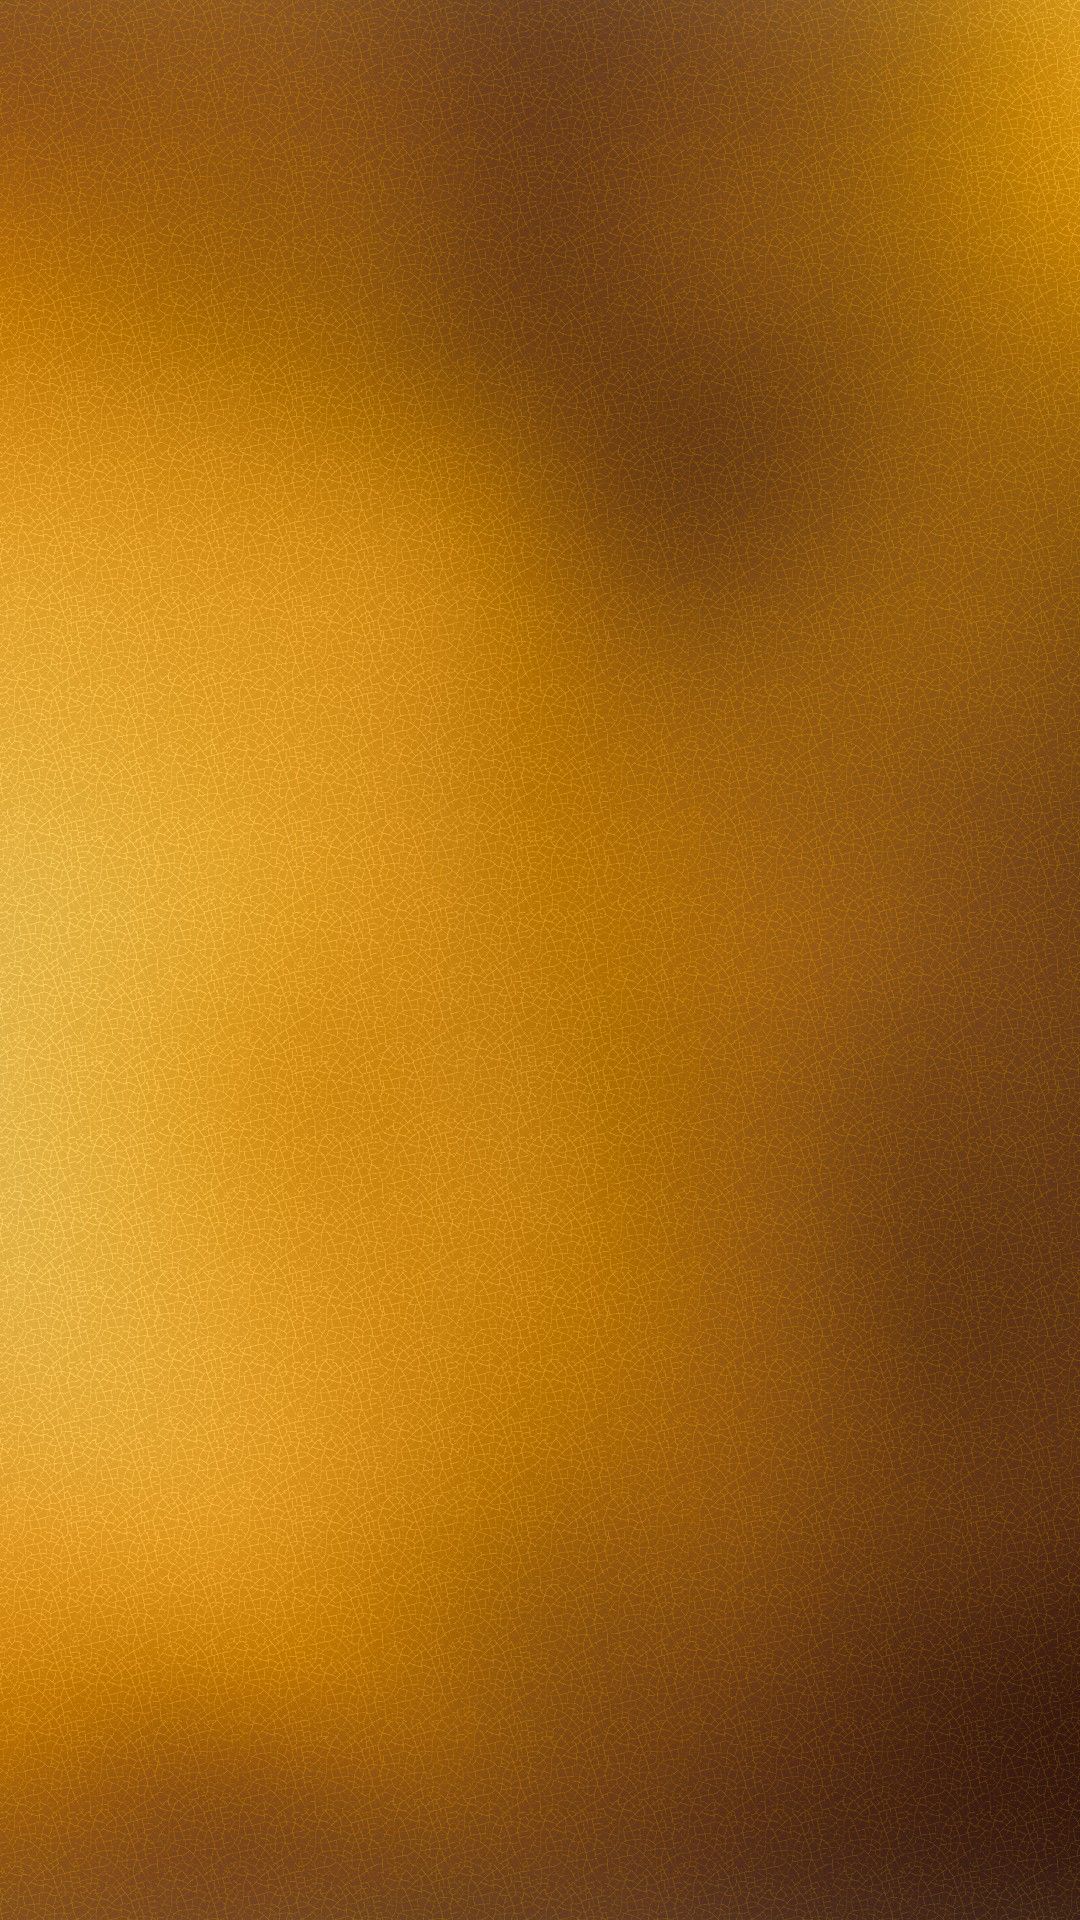 papier peint couleur or,jaune,orange,ciel,ambre,marron